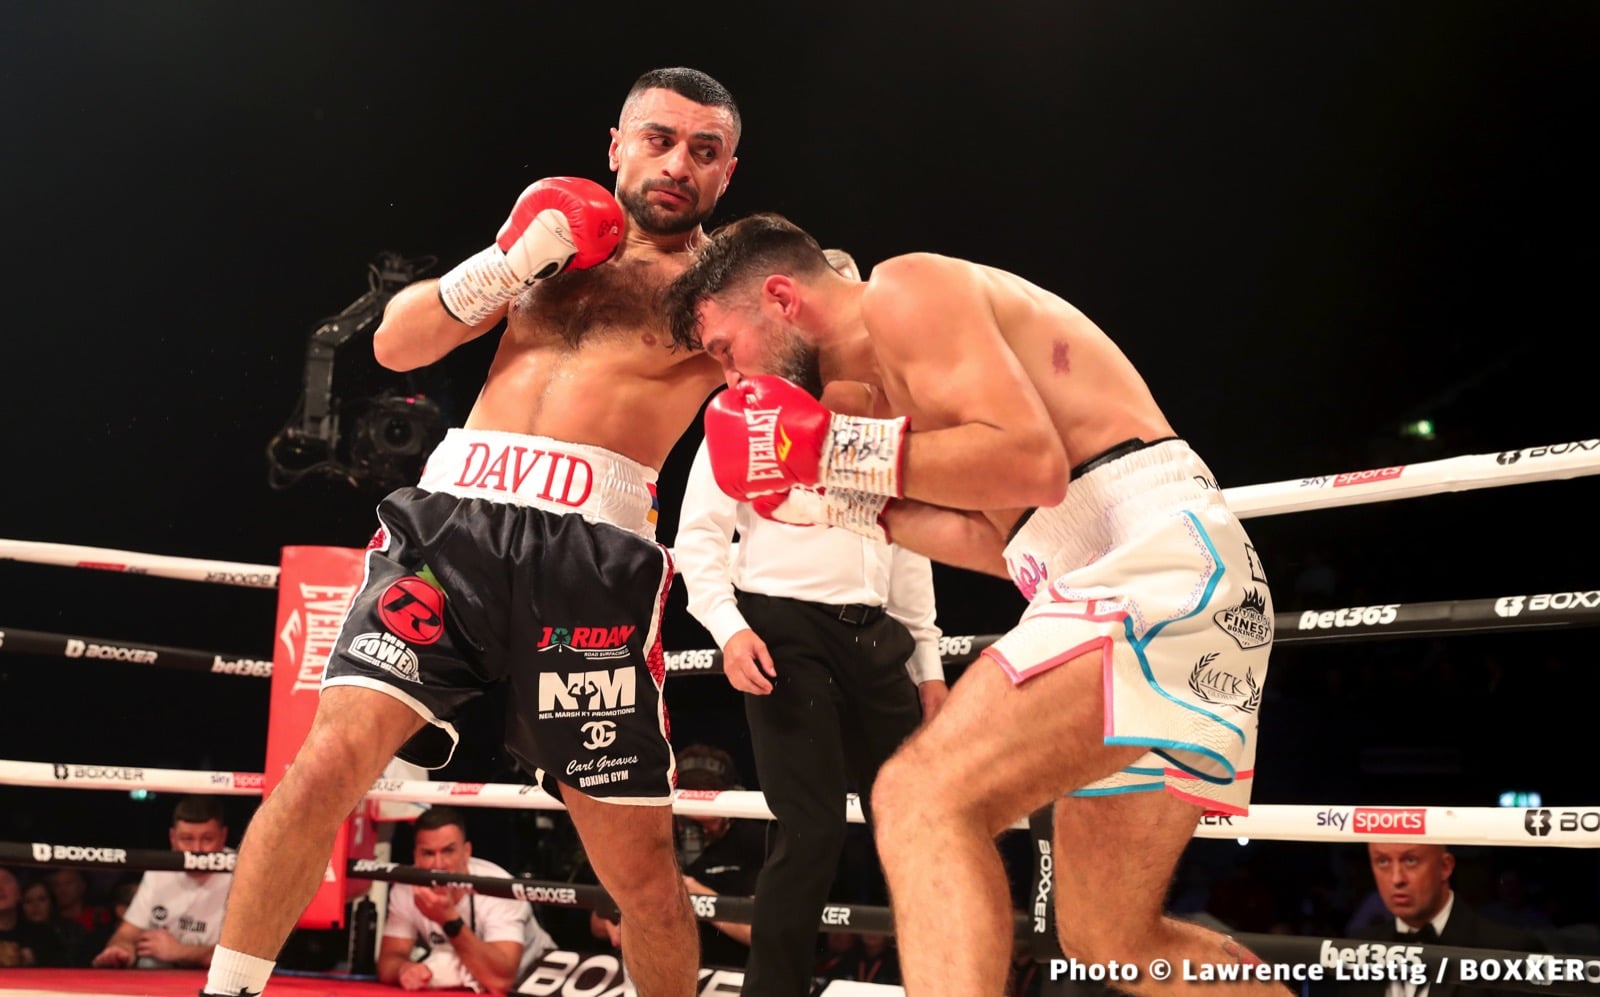 David Avanesyan boxing image / photo